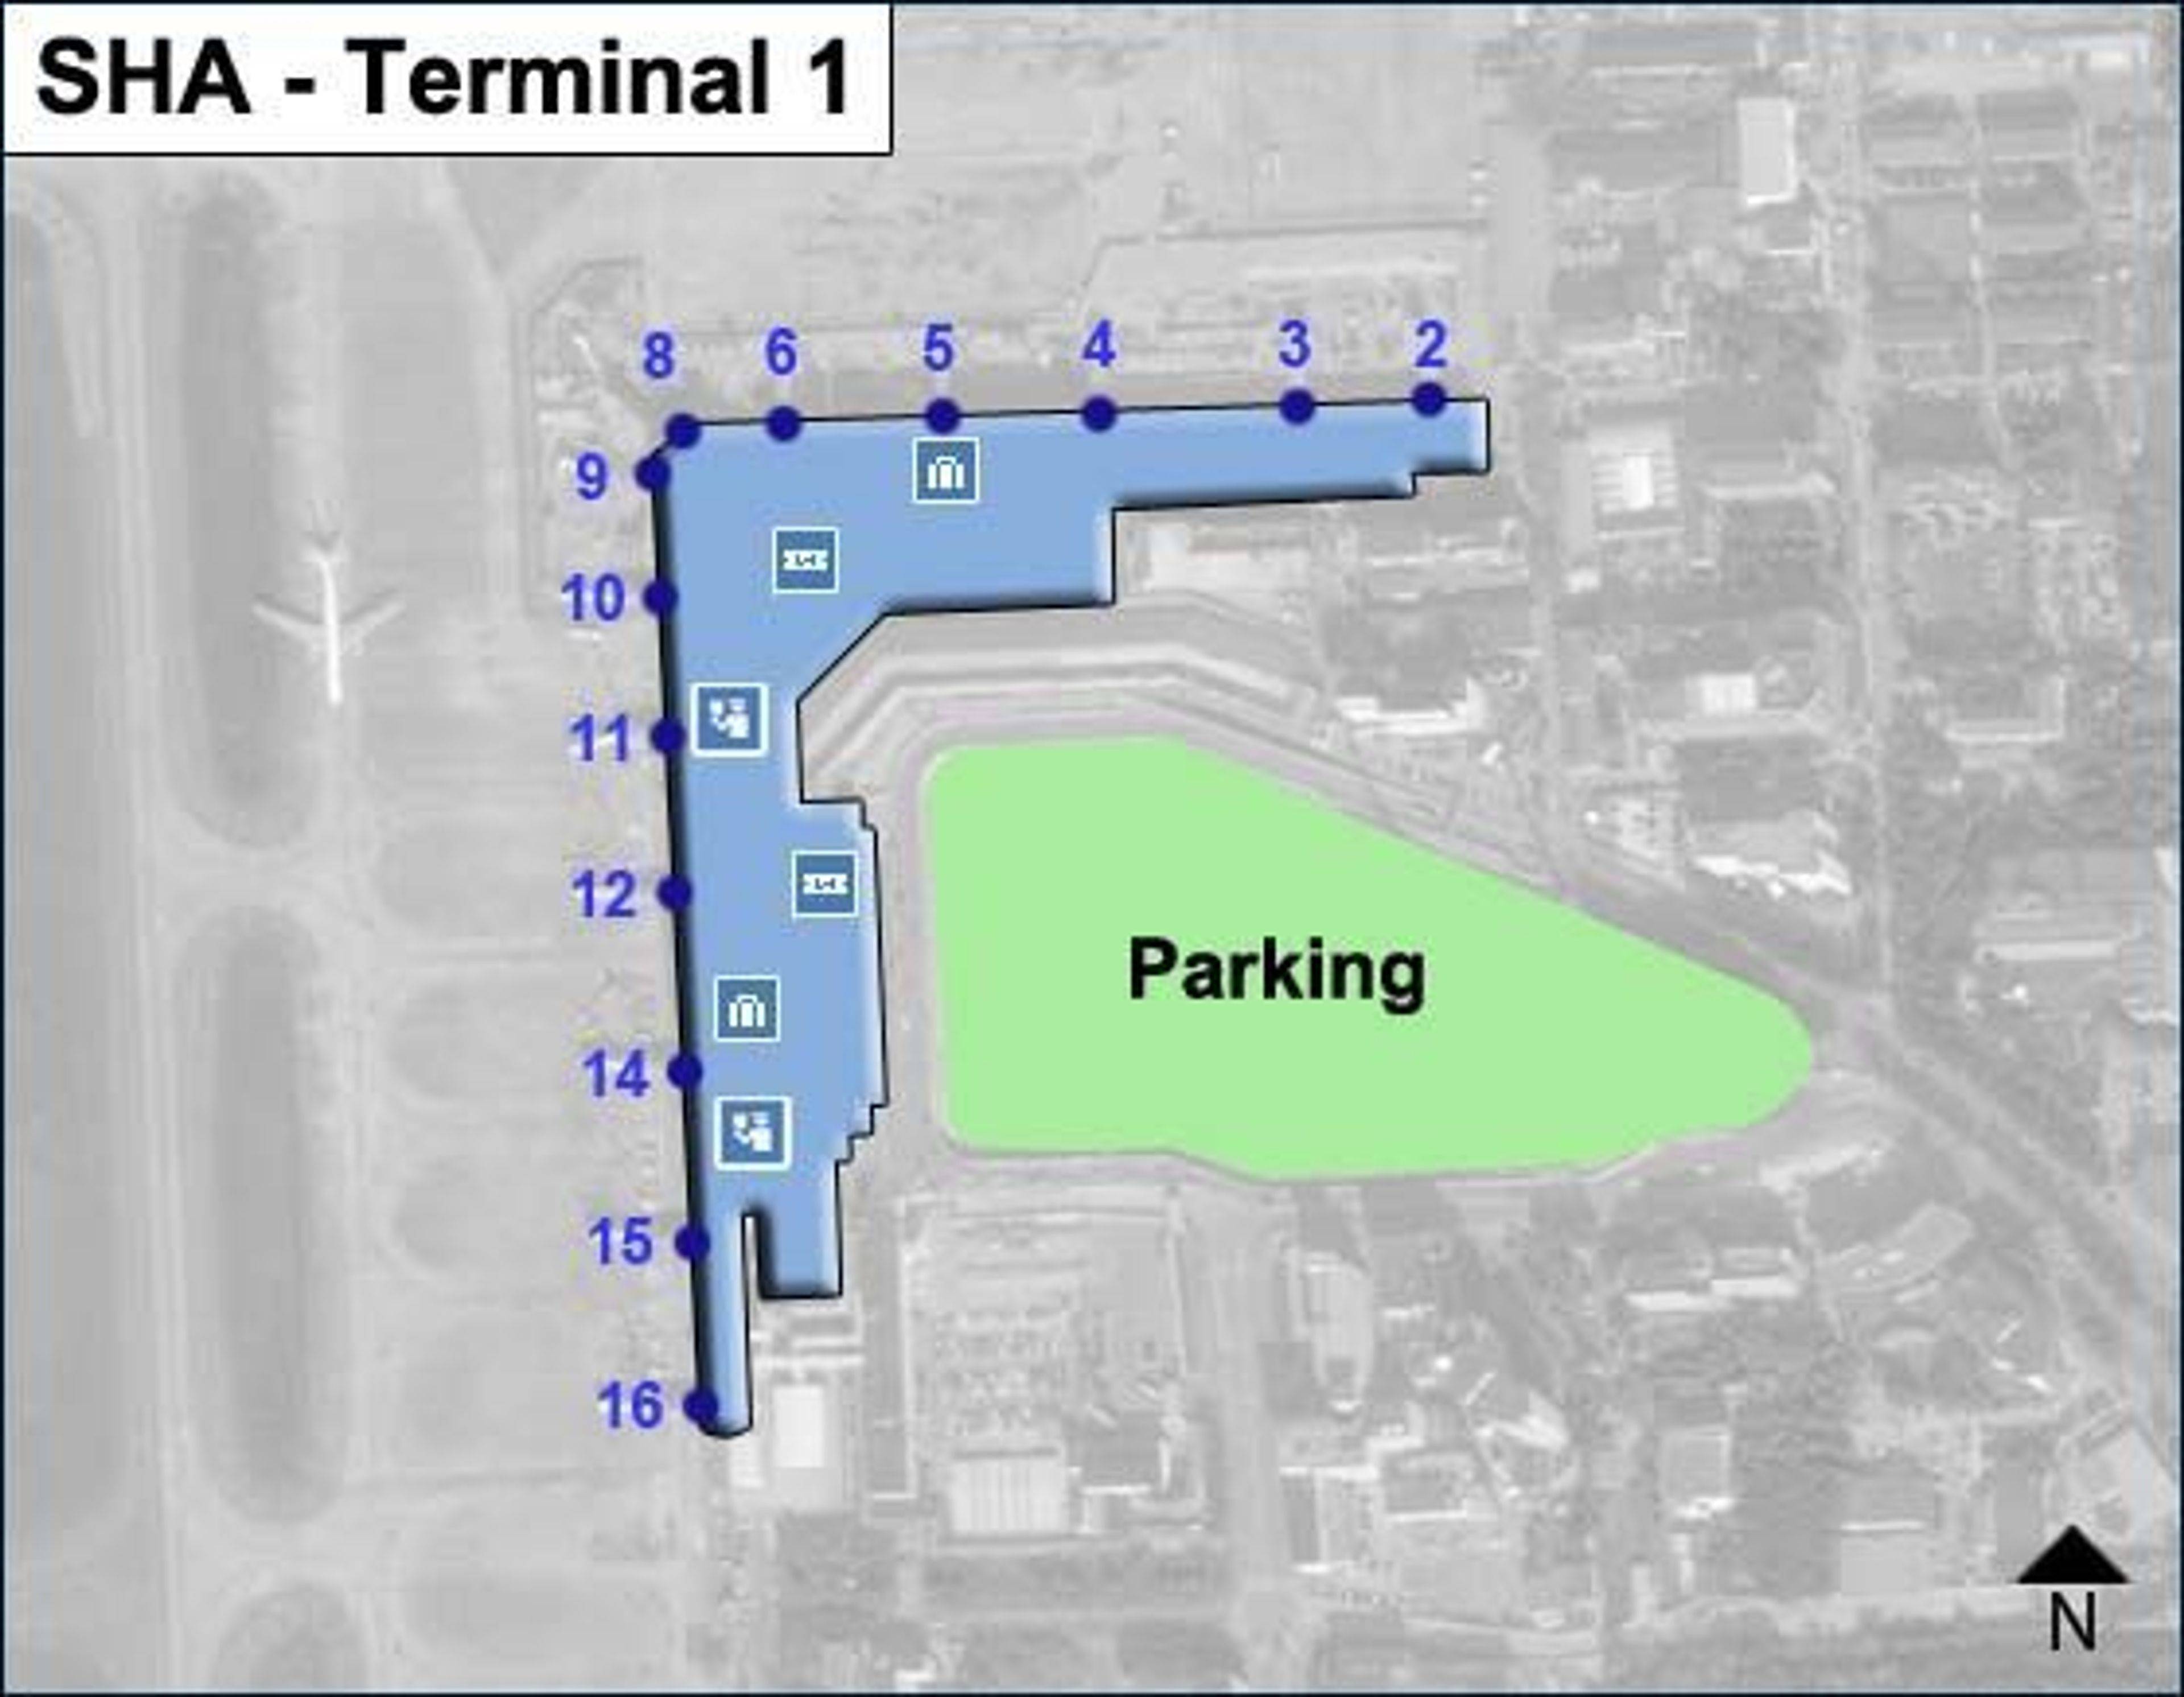 SHA Terminal 1 Map